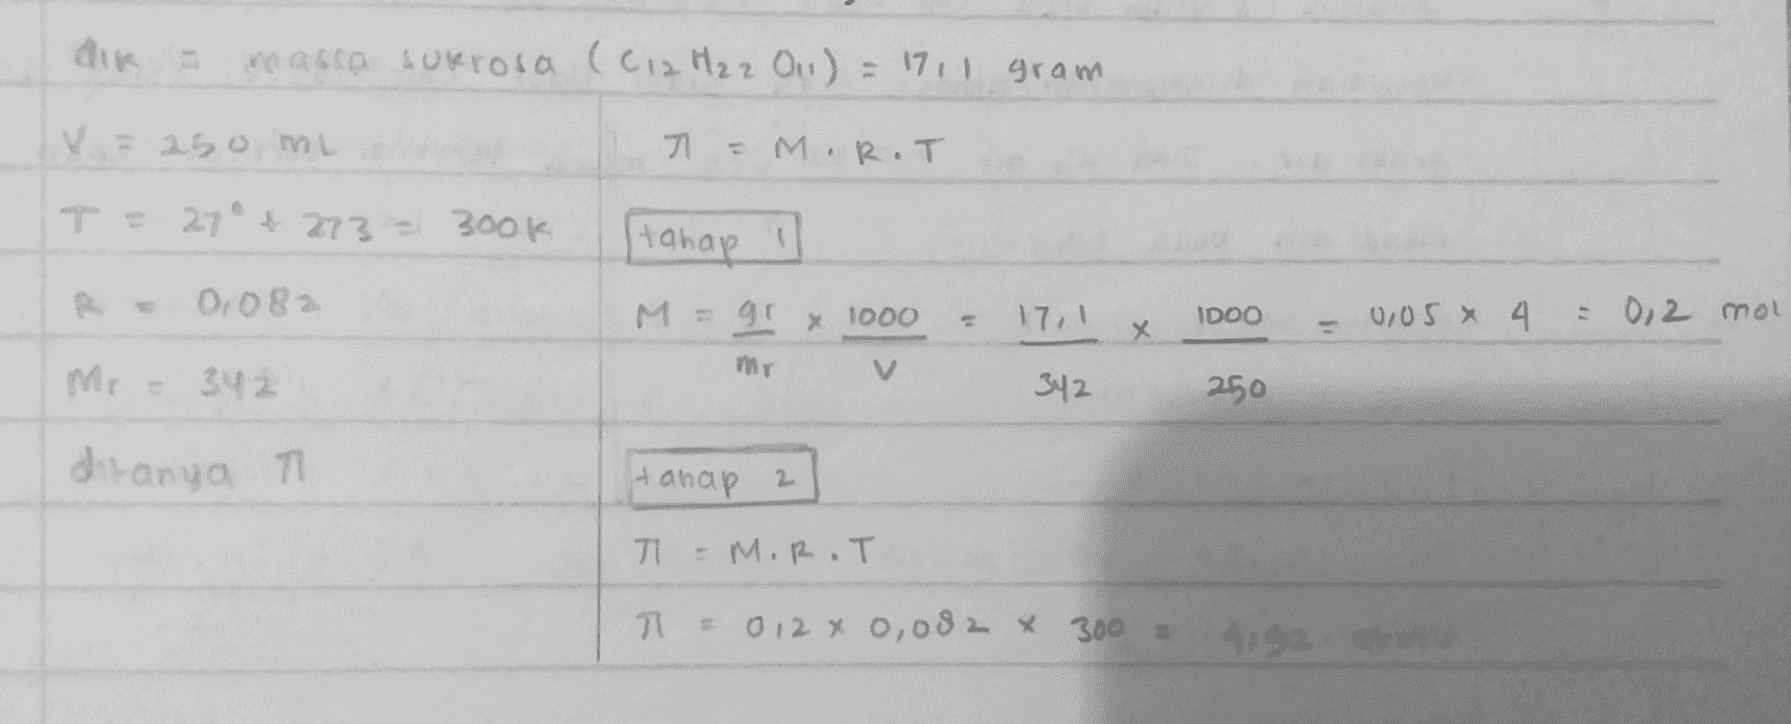 dik massa sukrosa (C12 H₂ 2 011) = 1711 gram V = 250 ml T = M.R.T T = 27° 4273 = 300k tahap 0.082 17.1 IDOO 0,05 * 4 = 0,2 mol M = gr x 1000 mer х Mr - 342 342 250 ditanya Hanap 2 71 - M.R.T 기 = 0 12 x 0,082 x 300 4192 atm 